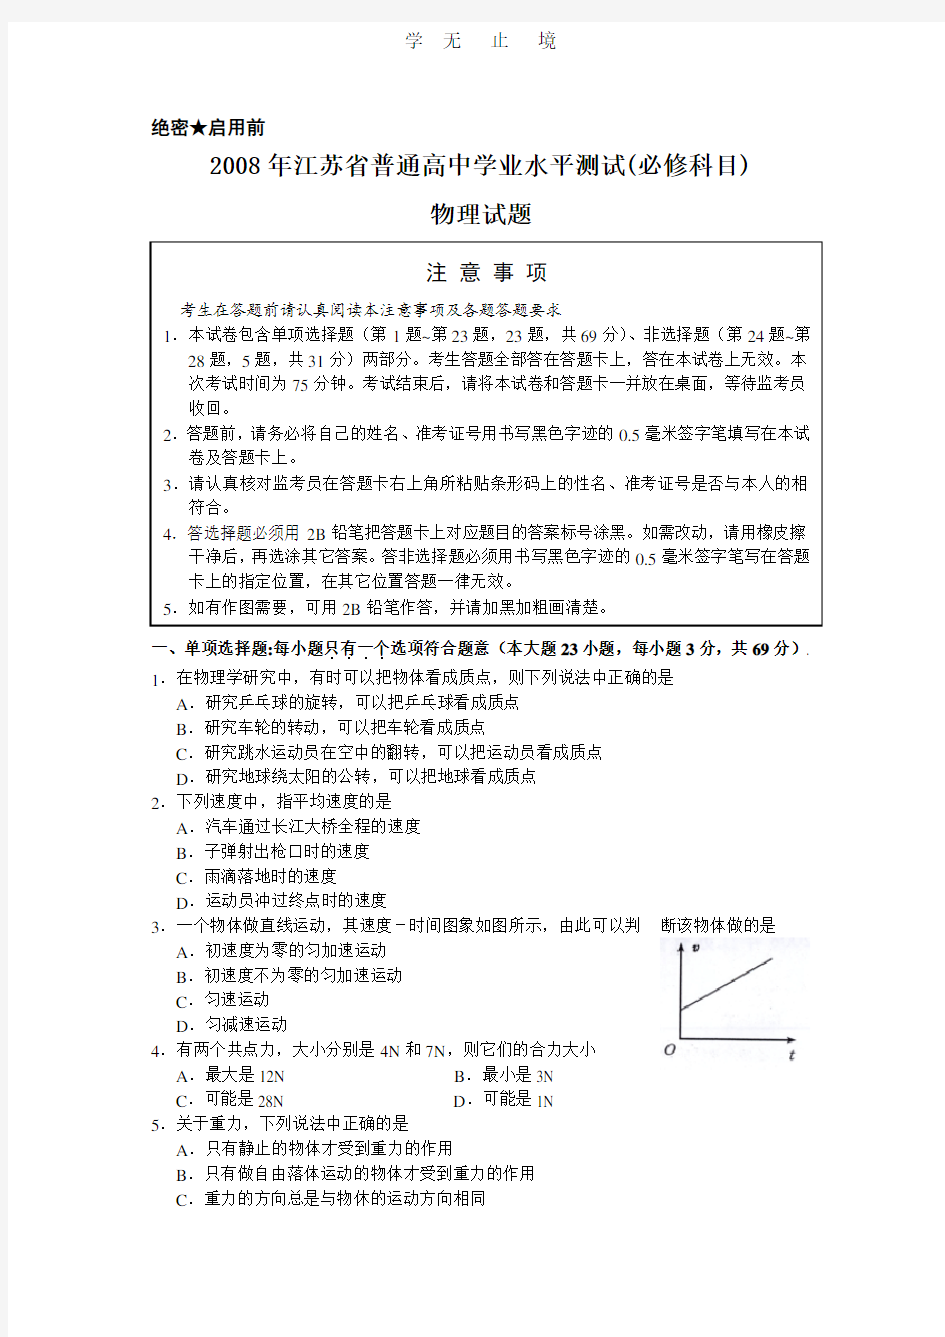 江苏省学业水平测试物理试卷.pdf